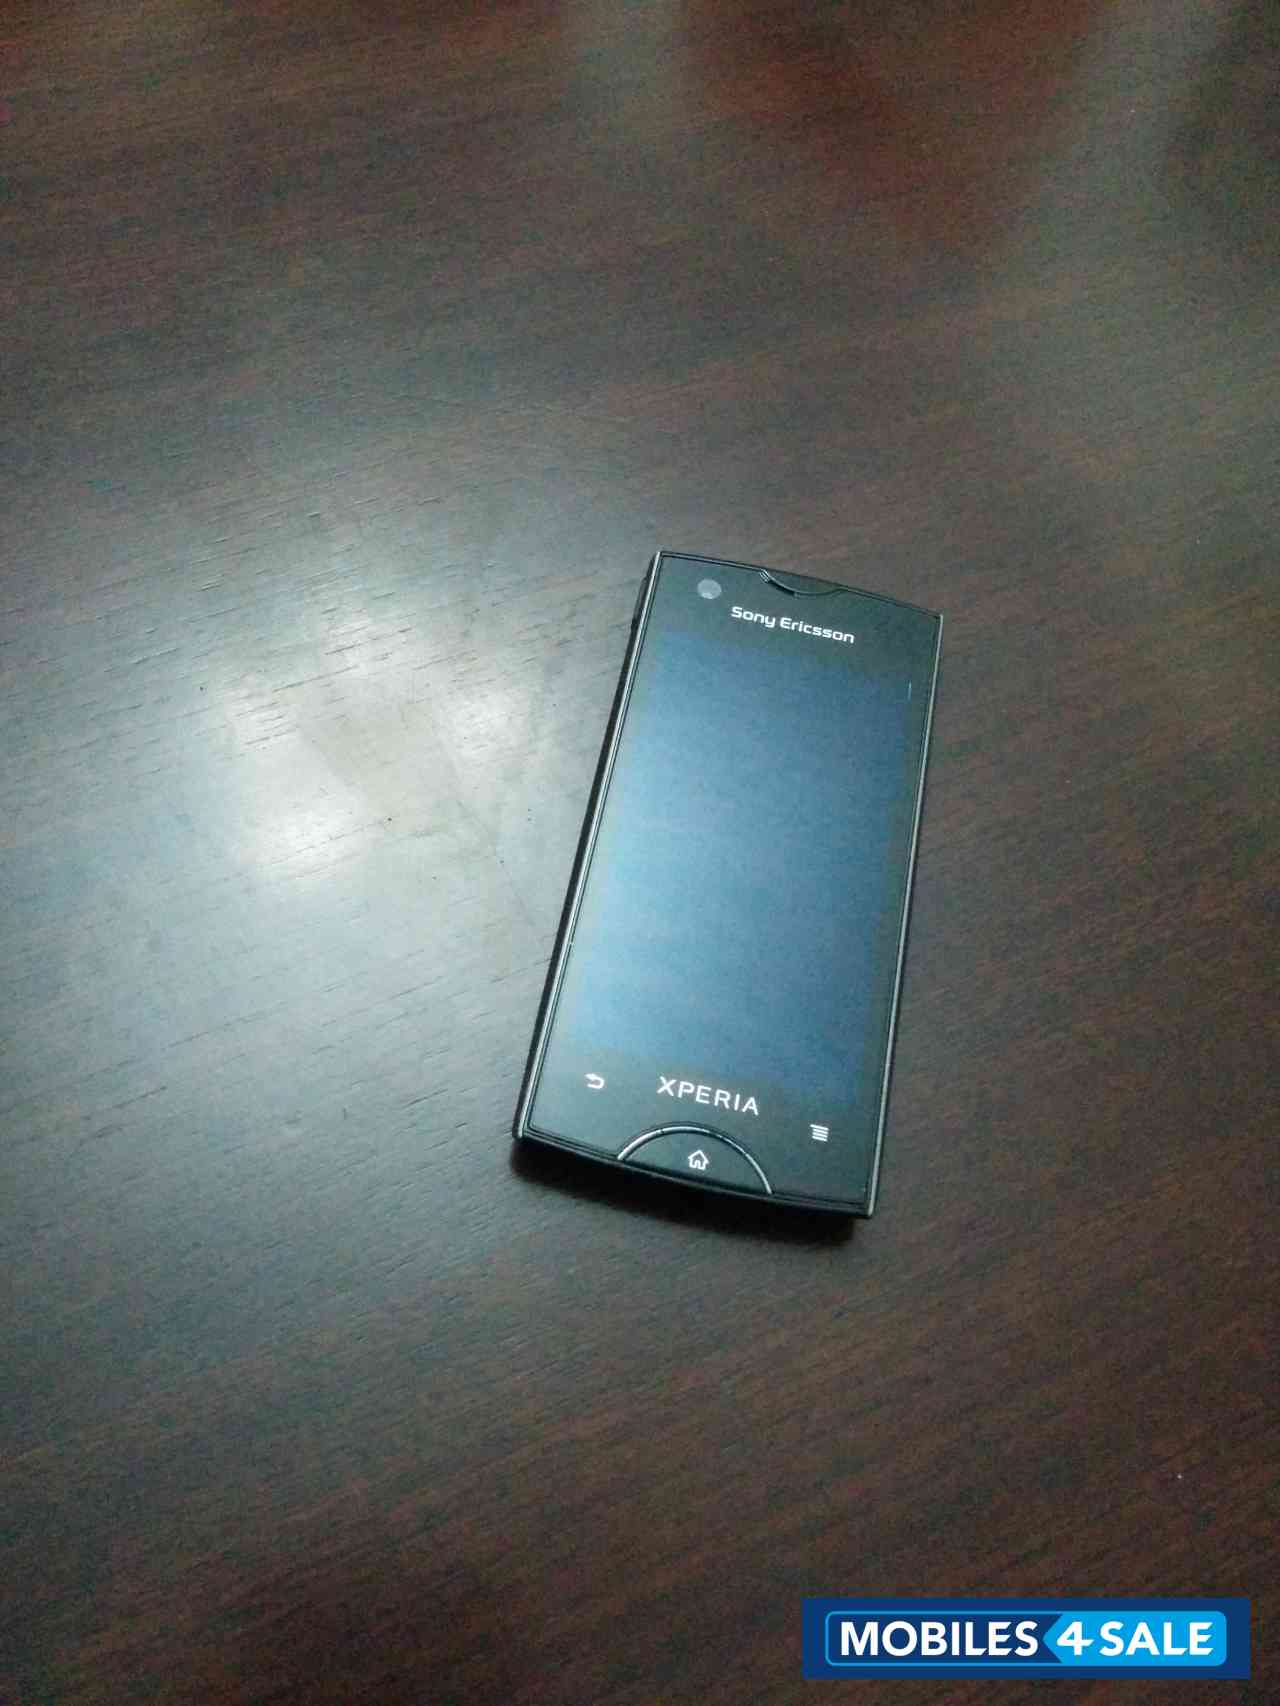 Black Sony Ericsson Xperia ray